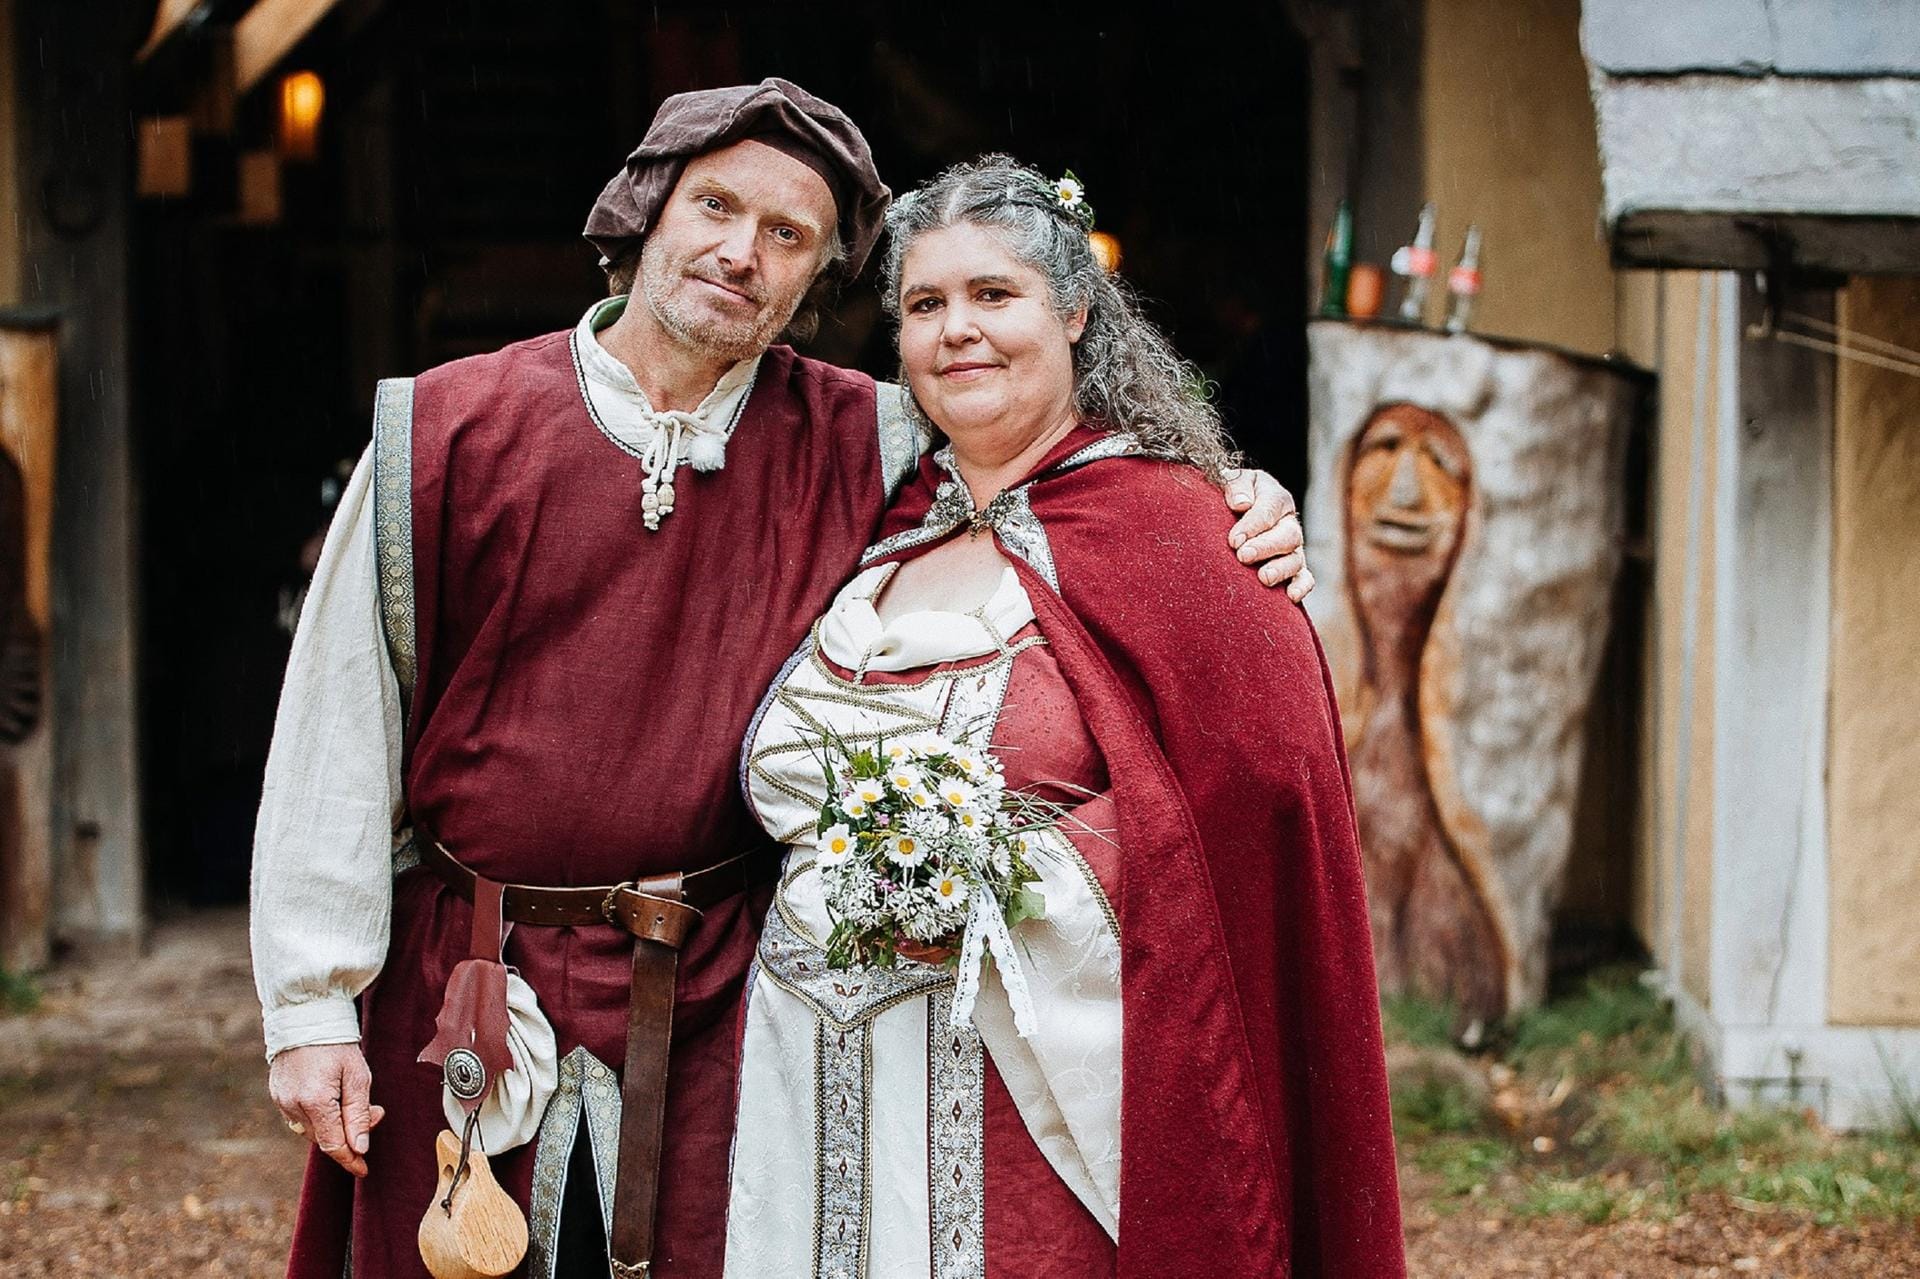 Jetzt sind Norbert und Petra nicht nur liiert, sondern auch verheiratet.